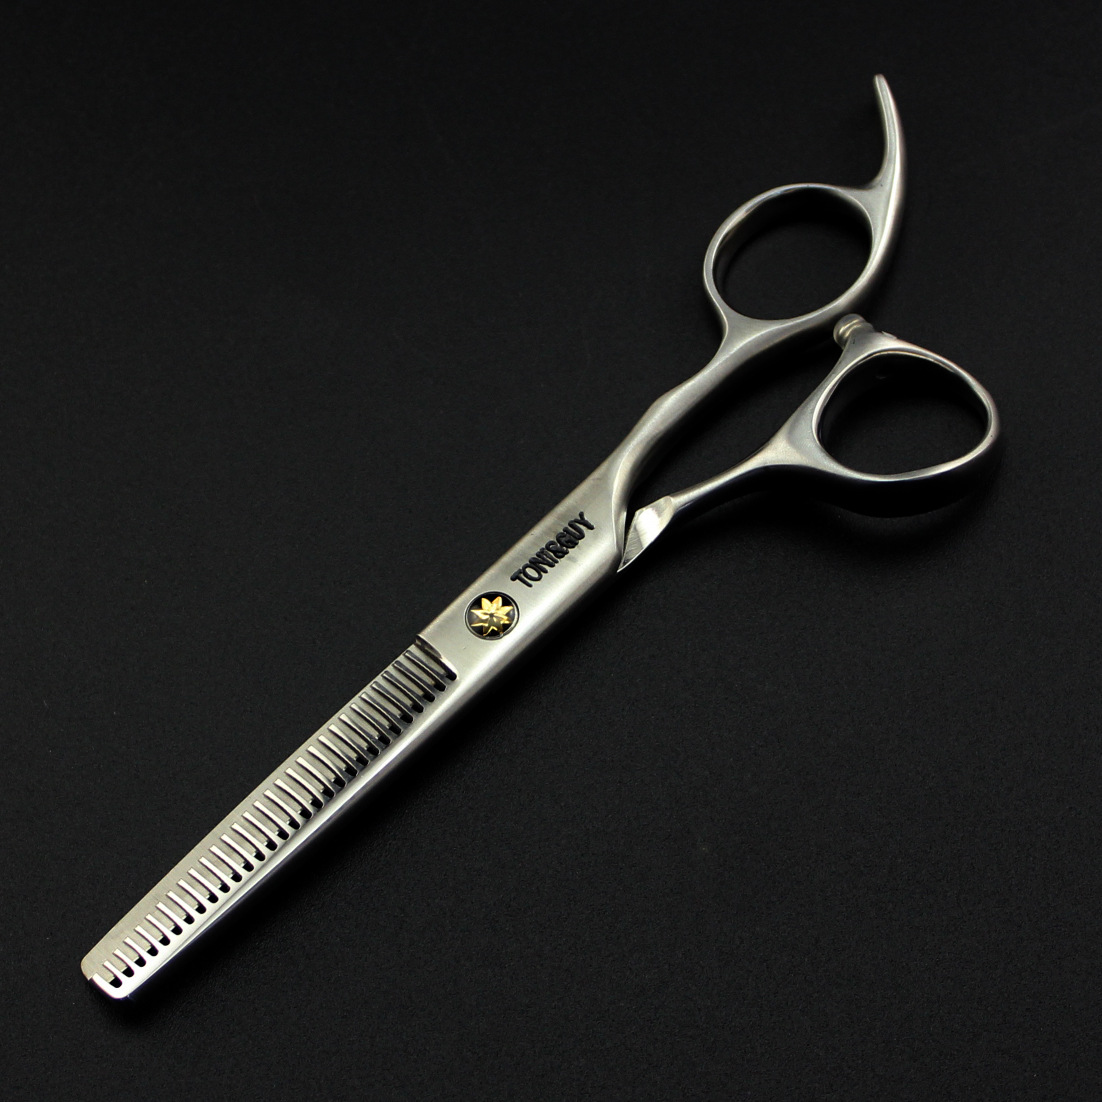 กรรไกรตัดผมรุ่นโทนี่แอนกาย ขนาด 6นิ้ว toni & guy scissors ขนาด 6.5 ขนาด 6.5